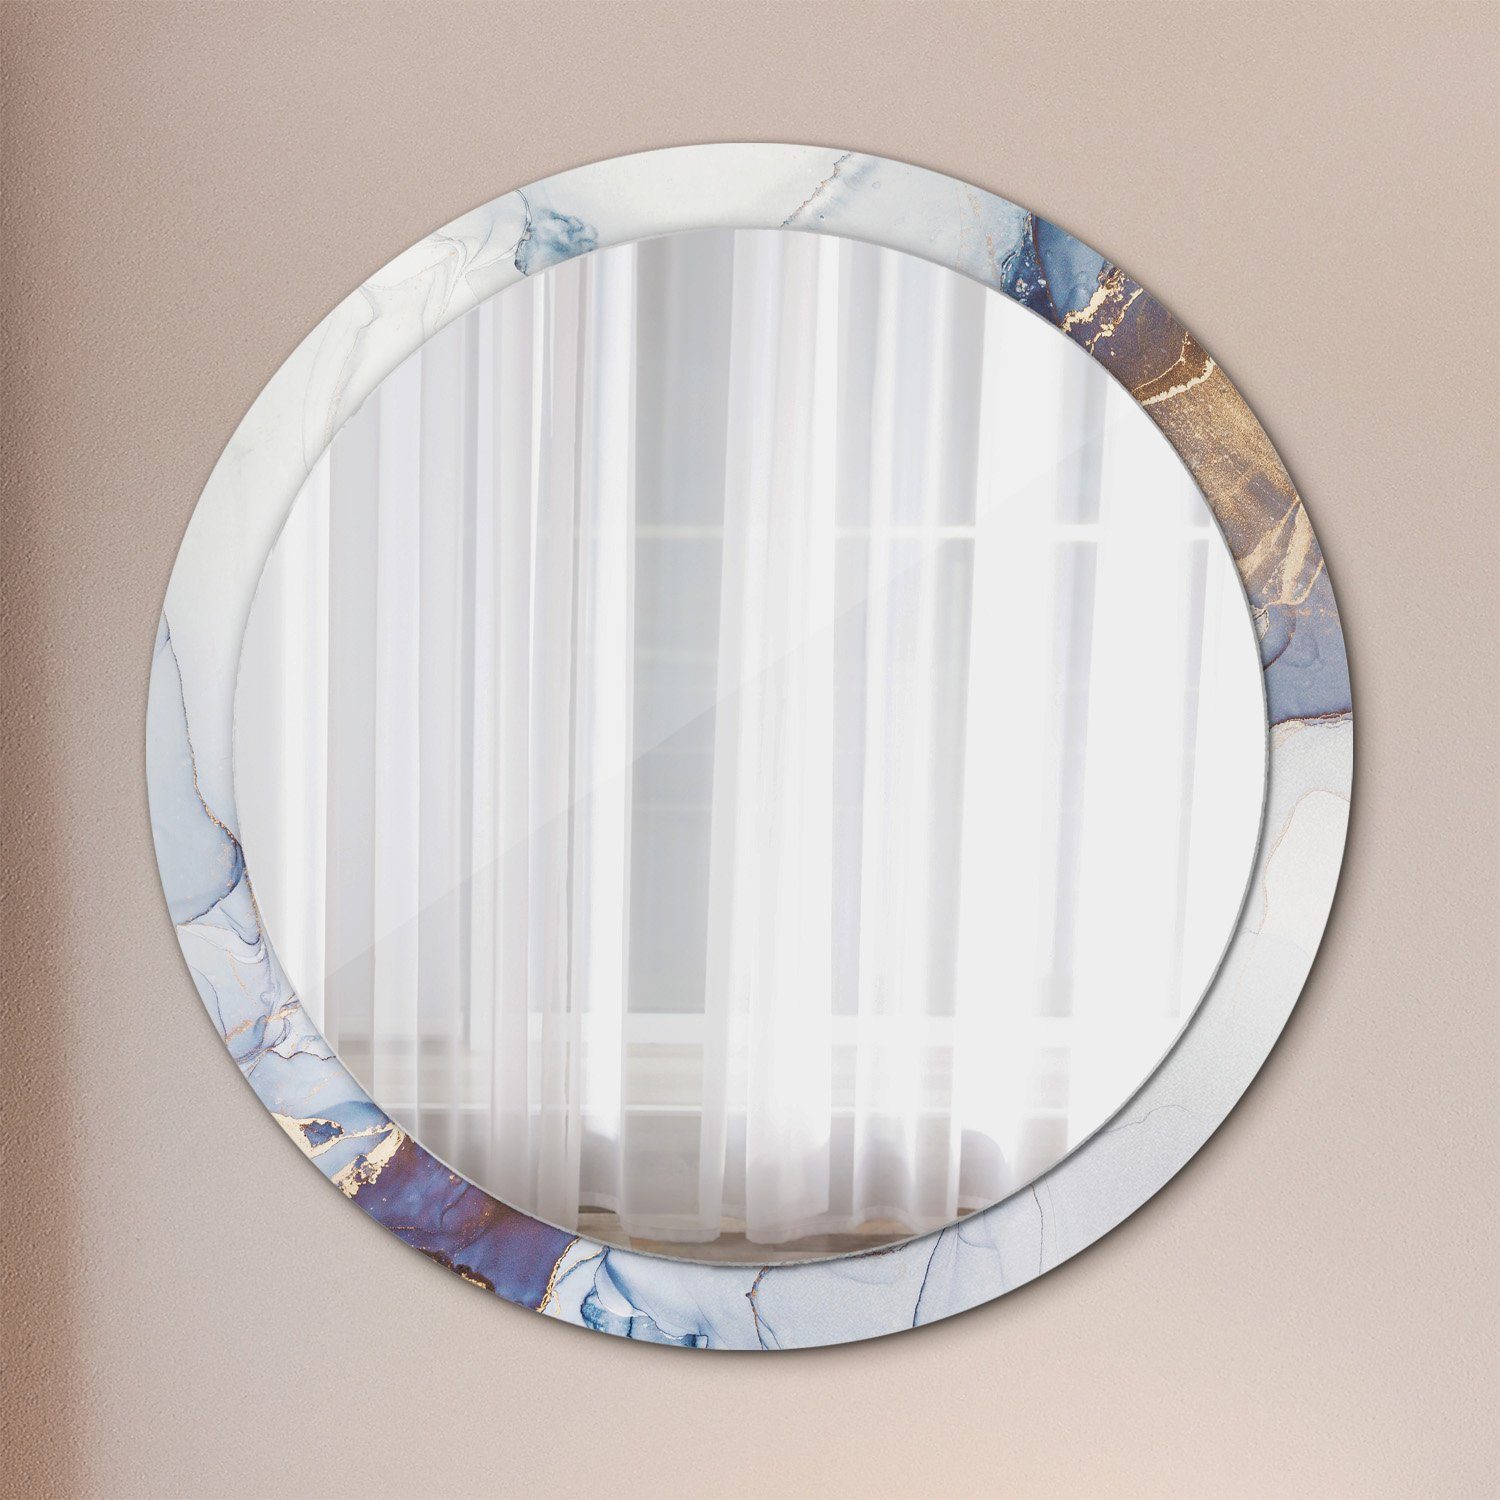 Modernem Rund: Wandspiegel Rundspiegel Runder mit mit Aufdruck Abstrakt Ø100cm, Deko Tulup Runder Aufdruck Spiegel Art Modernem Spiegel